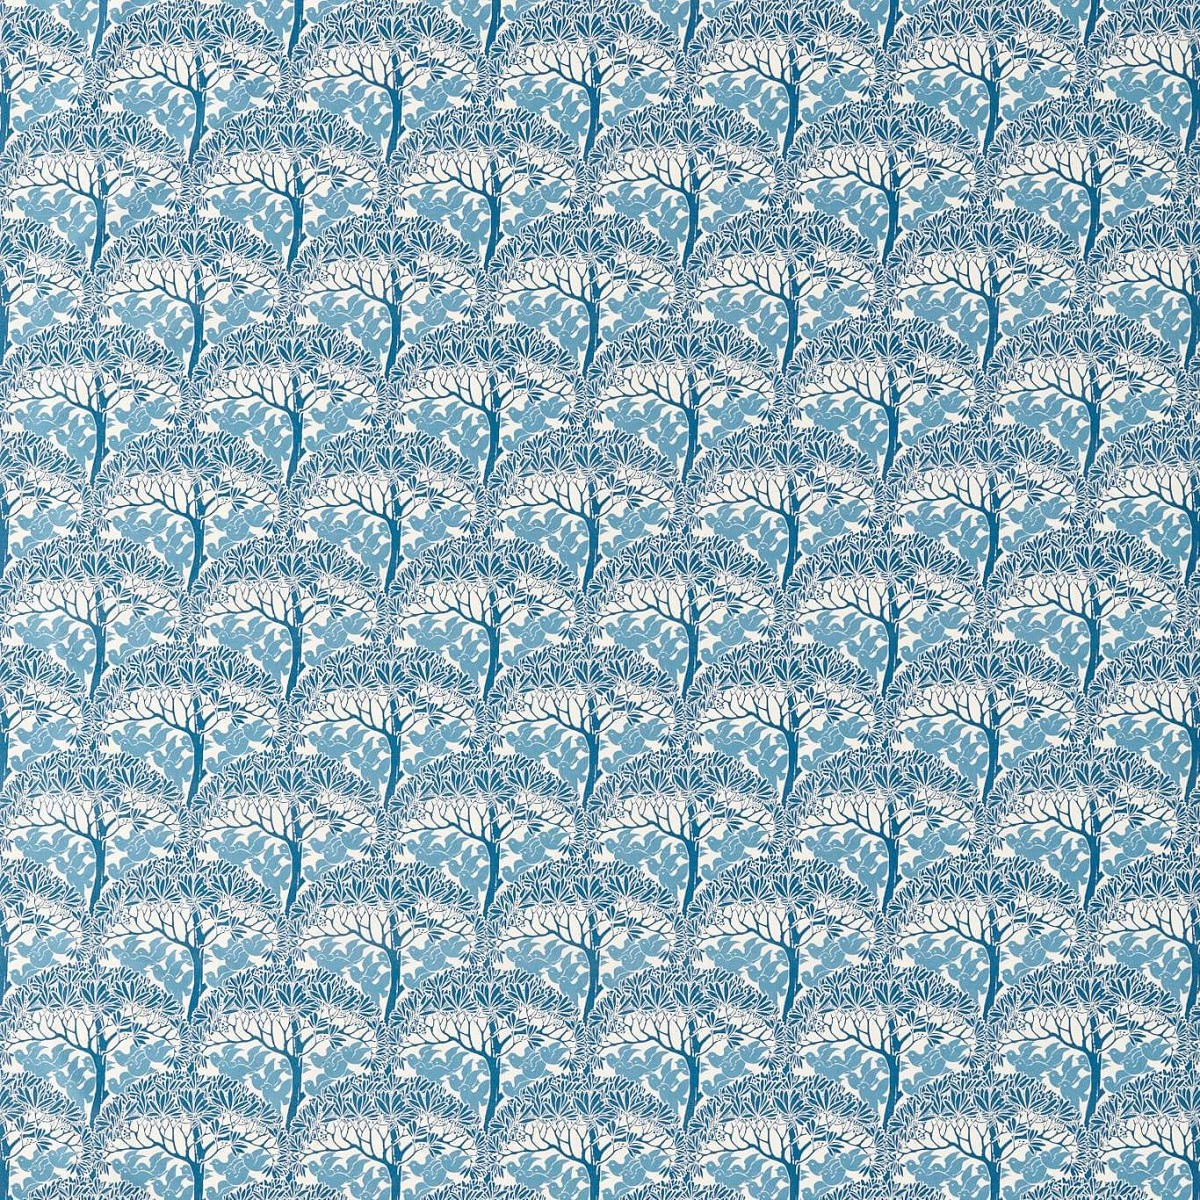 The Savaric Cirrus Fabric by William Morris & Co.